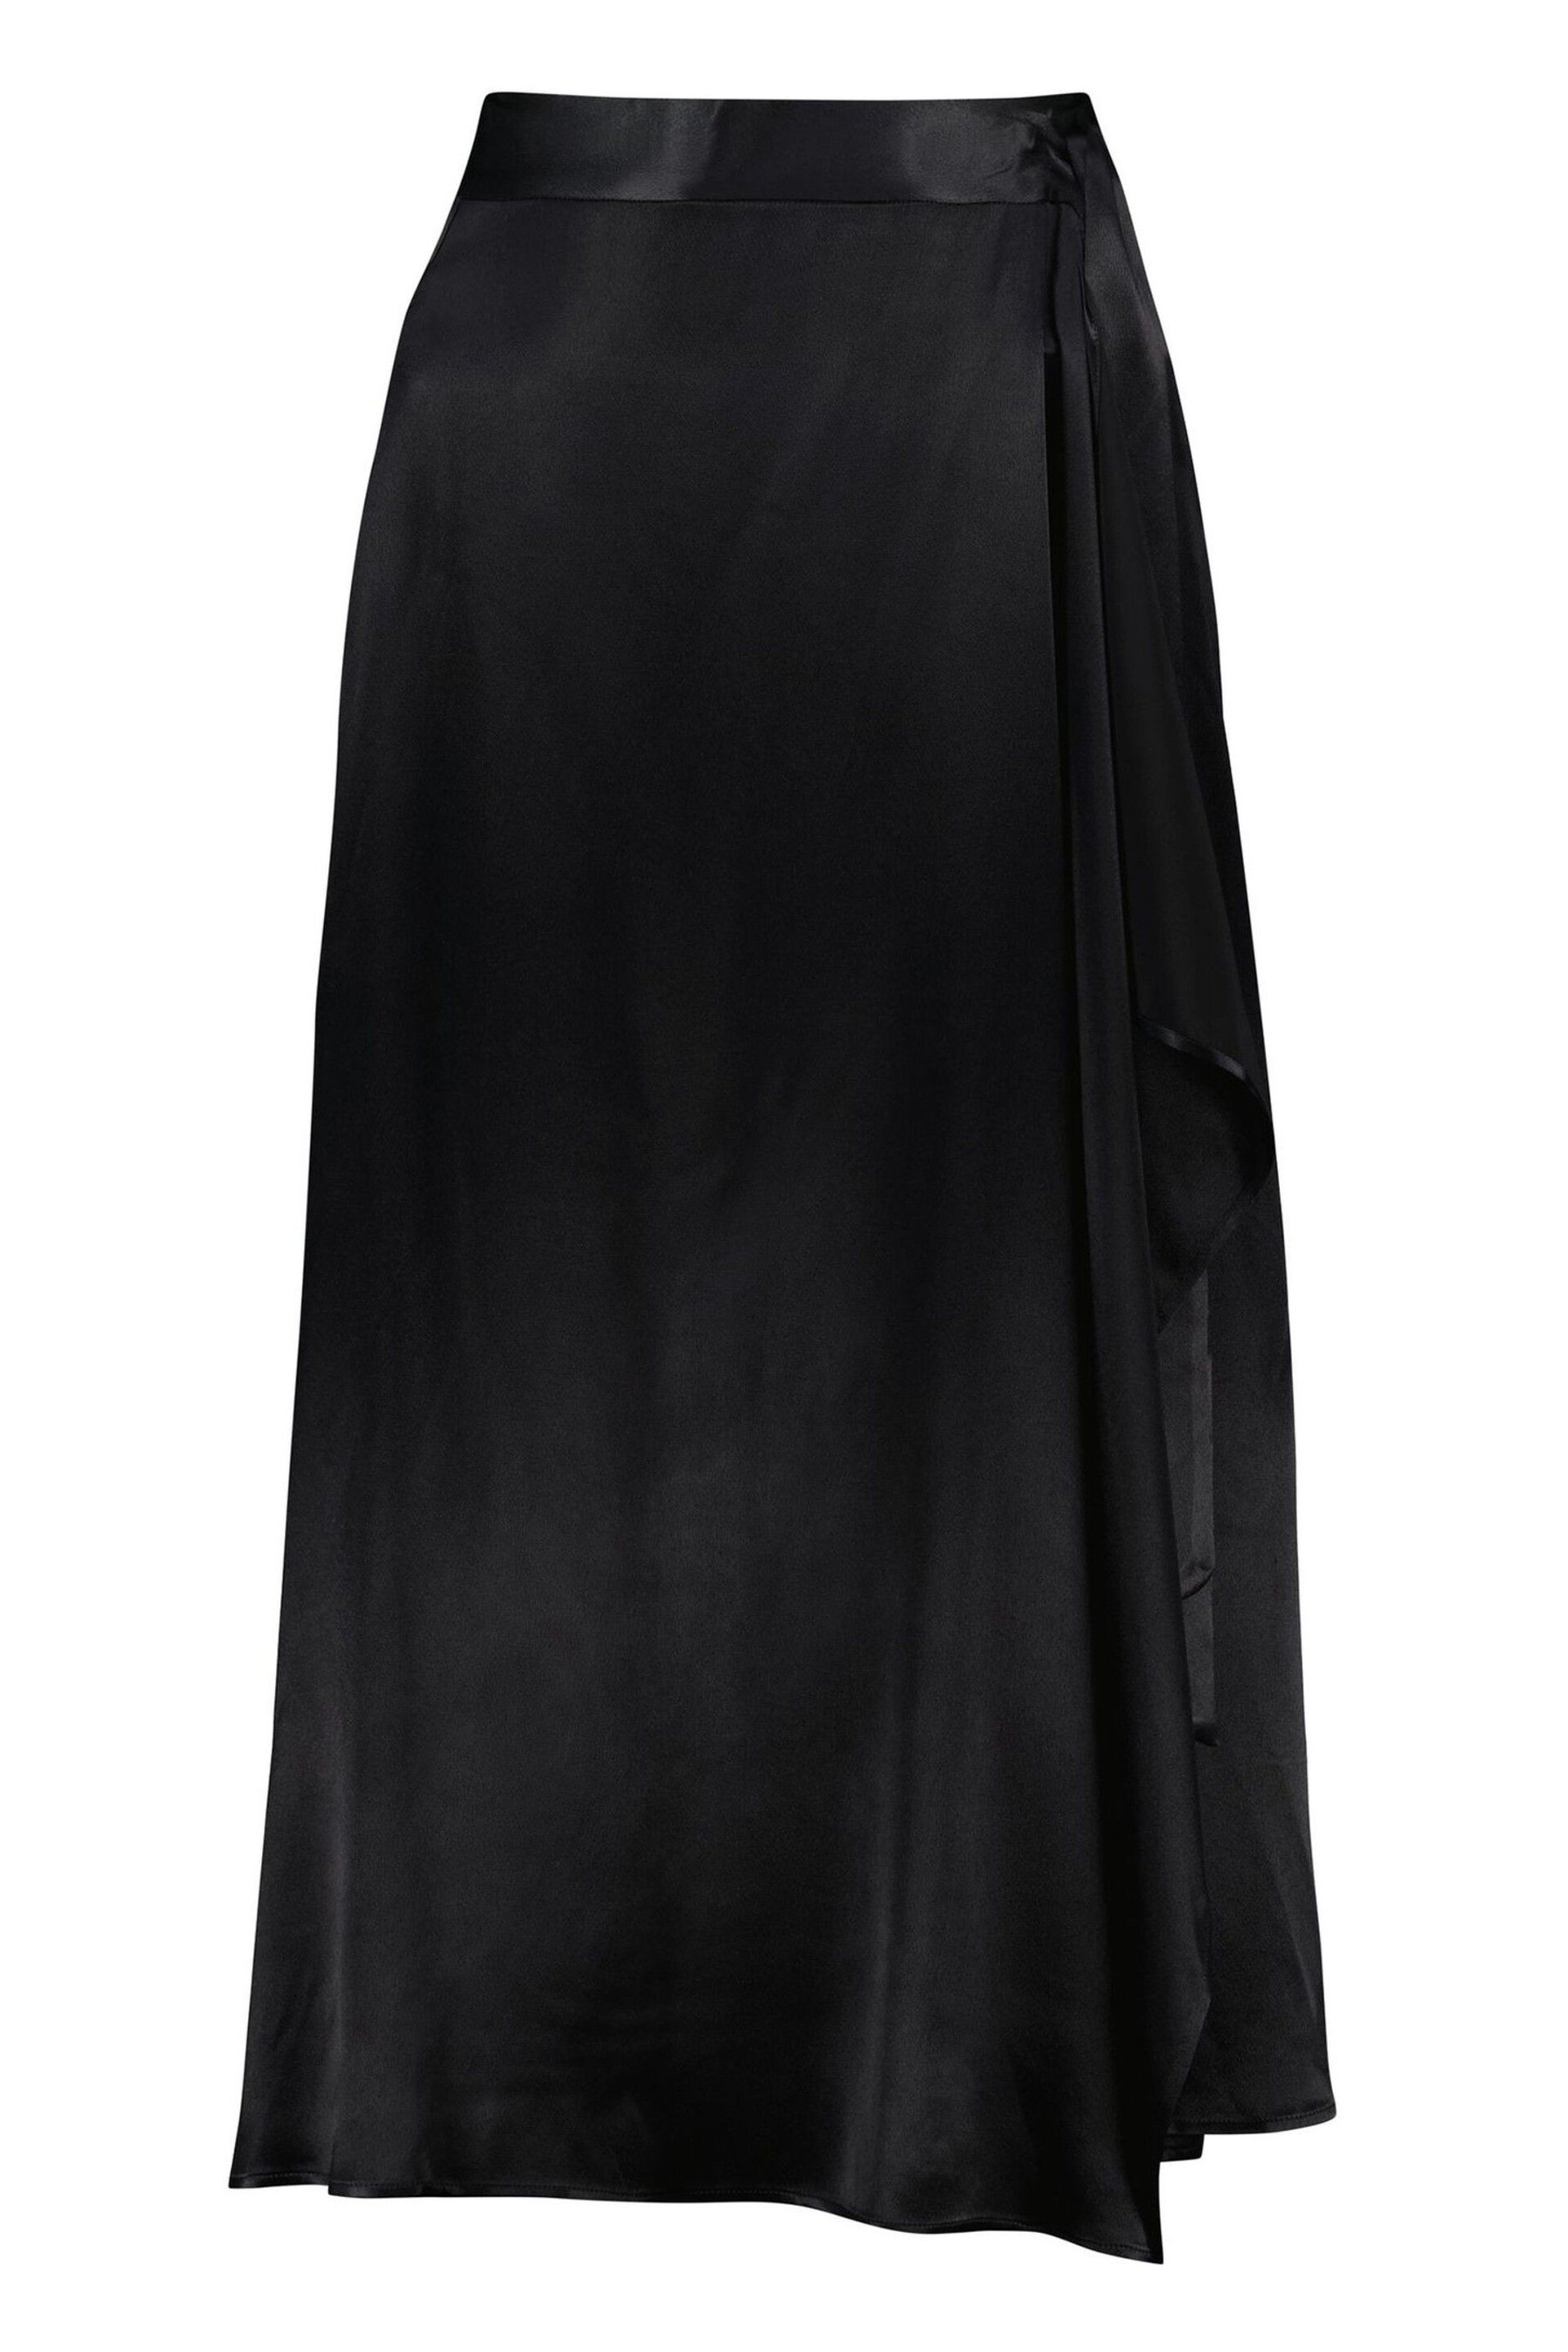 Baukjen Federica Ecojilin Black Skirt - Image 5 of 5